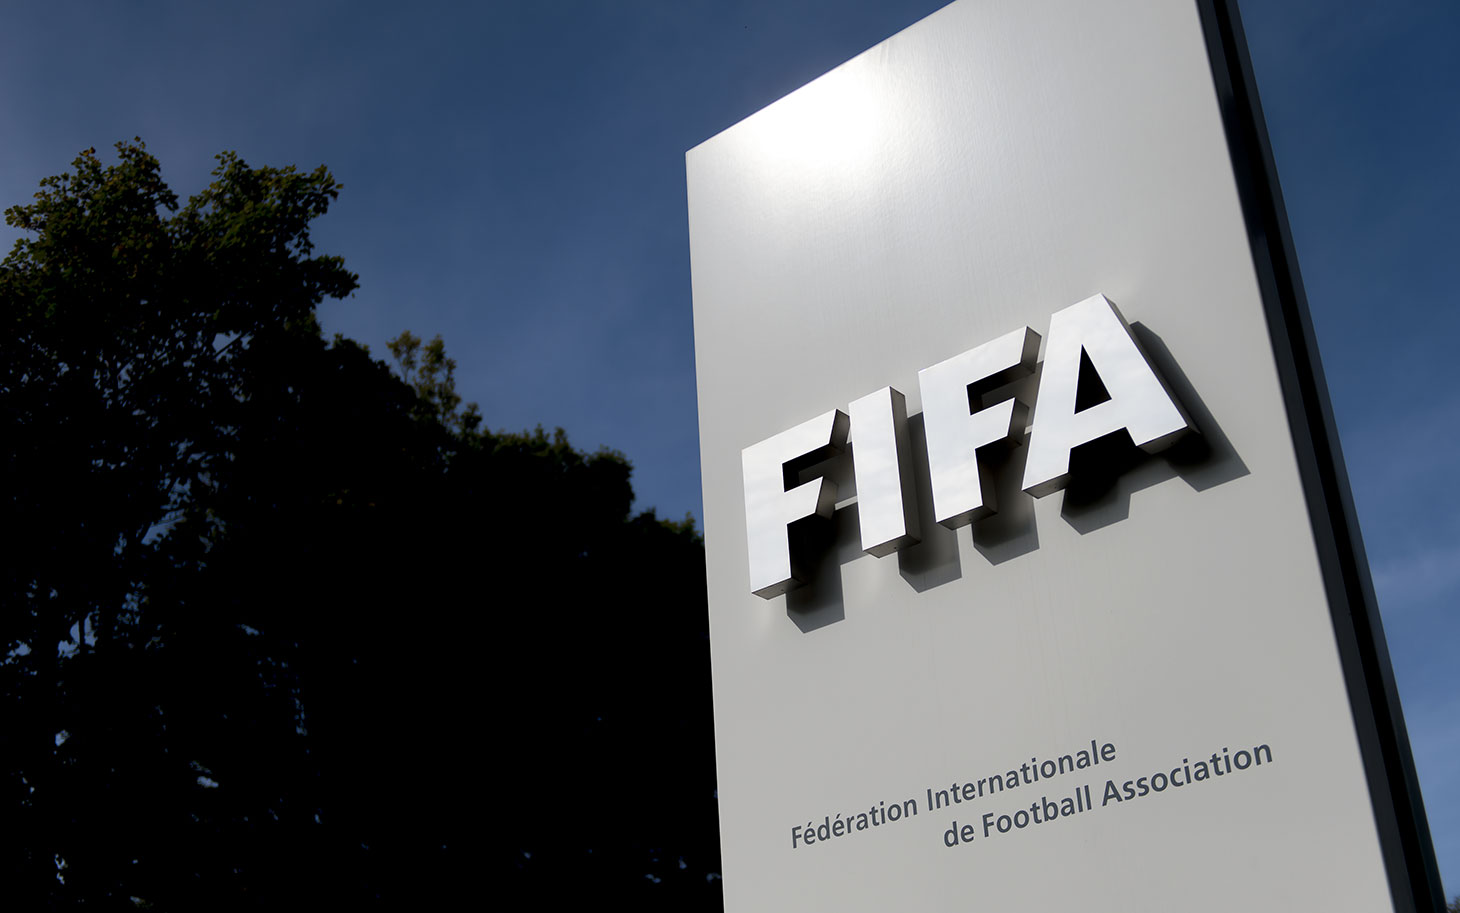 "الفيفا" يعلن تقديم موعد انطلاق كأس العالم "قطر 2022" يوم واحد